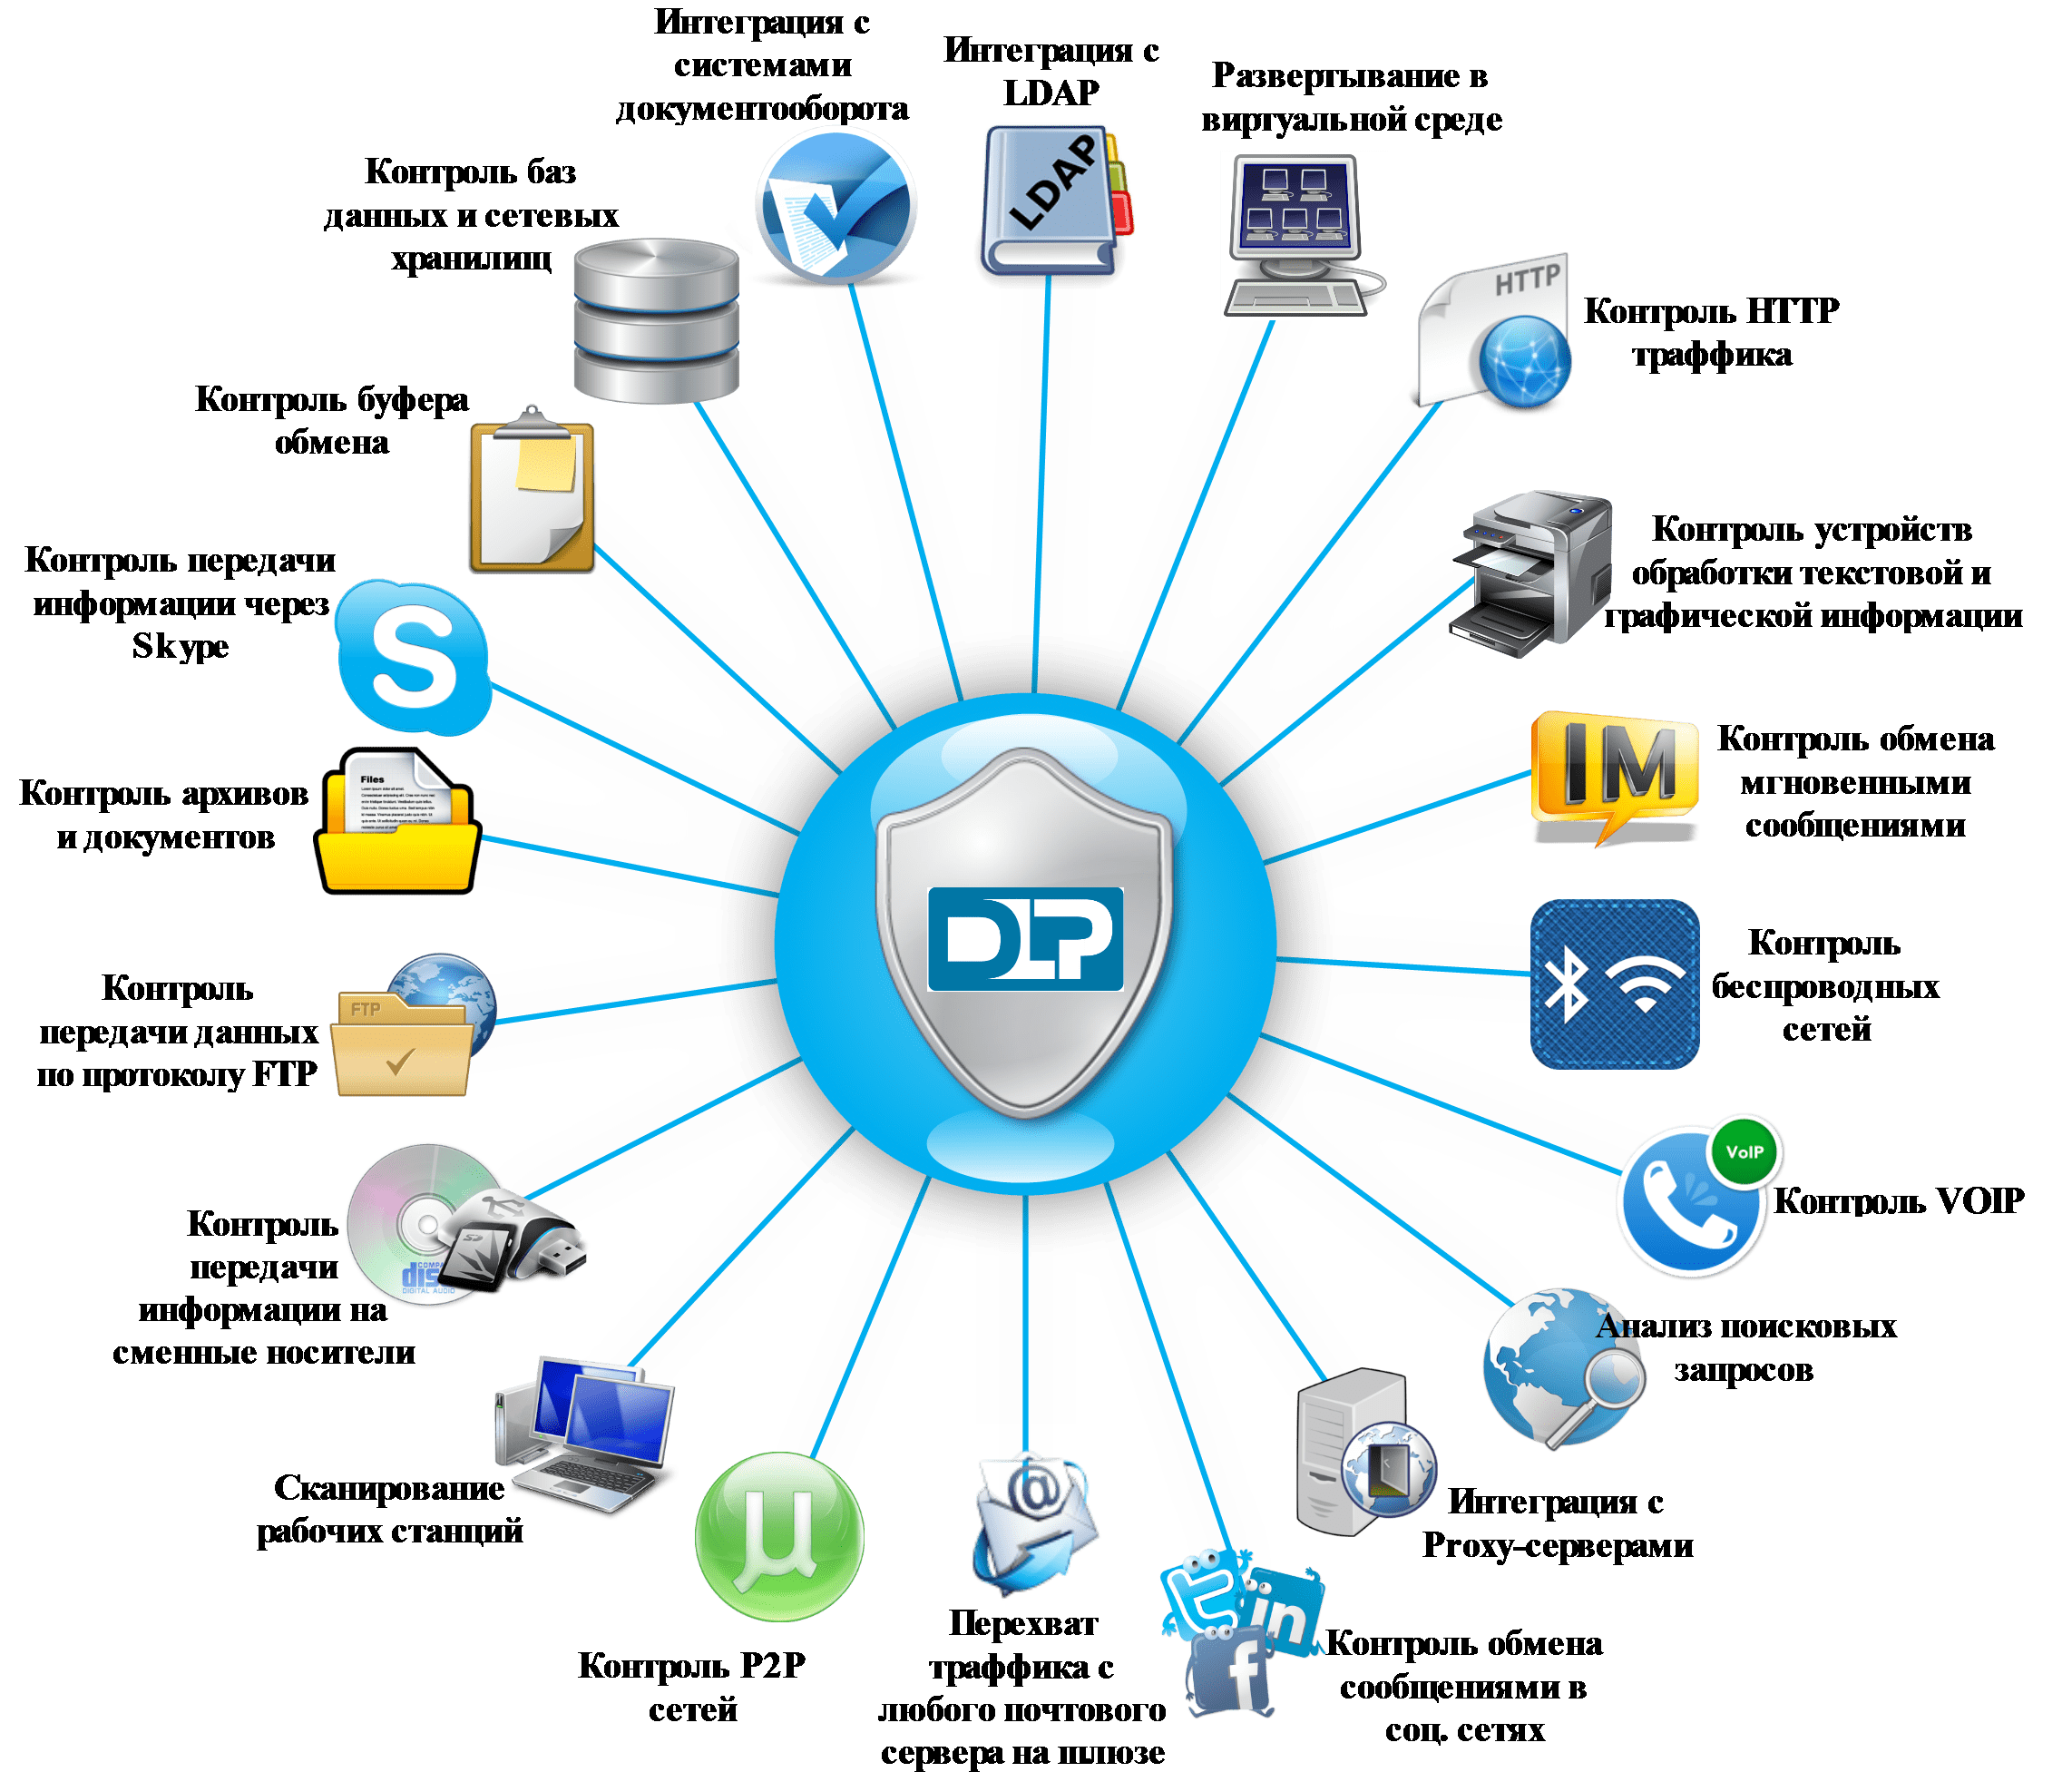 Основные функции DLP системы. DLP-система – комплексная защита от утечки информации. Системы предотвращения утечек конфиденциальной информации. Схема DLP системы. Информационный обмен сообщениями